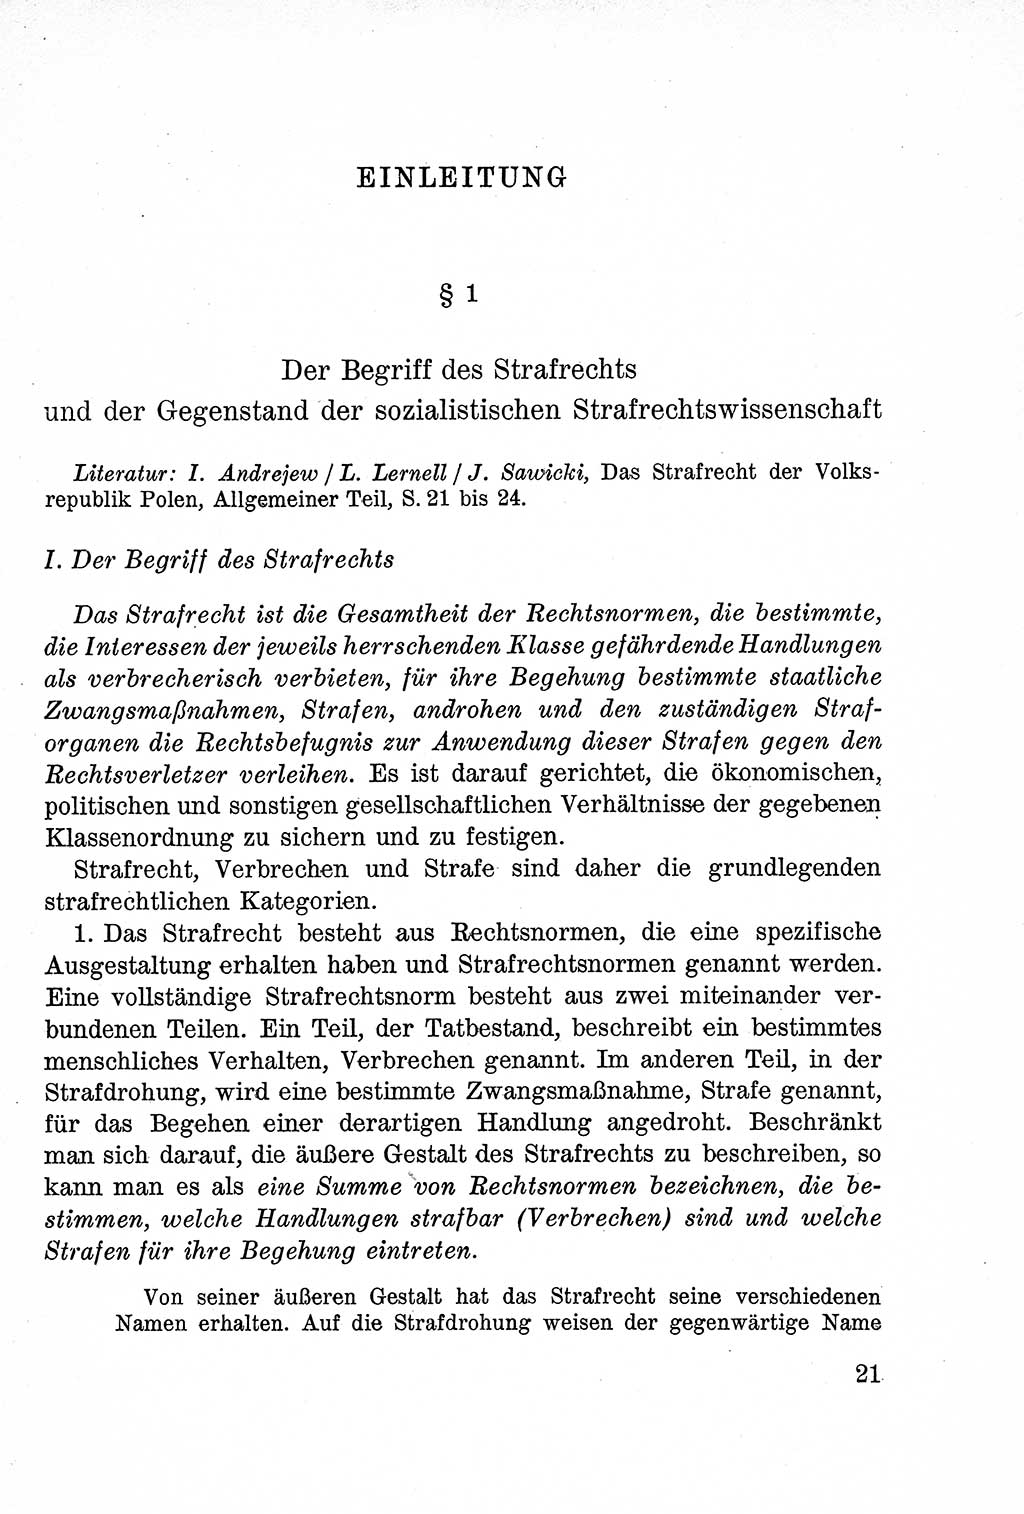 Lehrbuch des Strafrechts der Deutschen Demokratischen Republik (DDR), Allgemeiner Teil 1957, Seite 21 (Lb. Strafr. DDR AT 1957, S. 21)